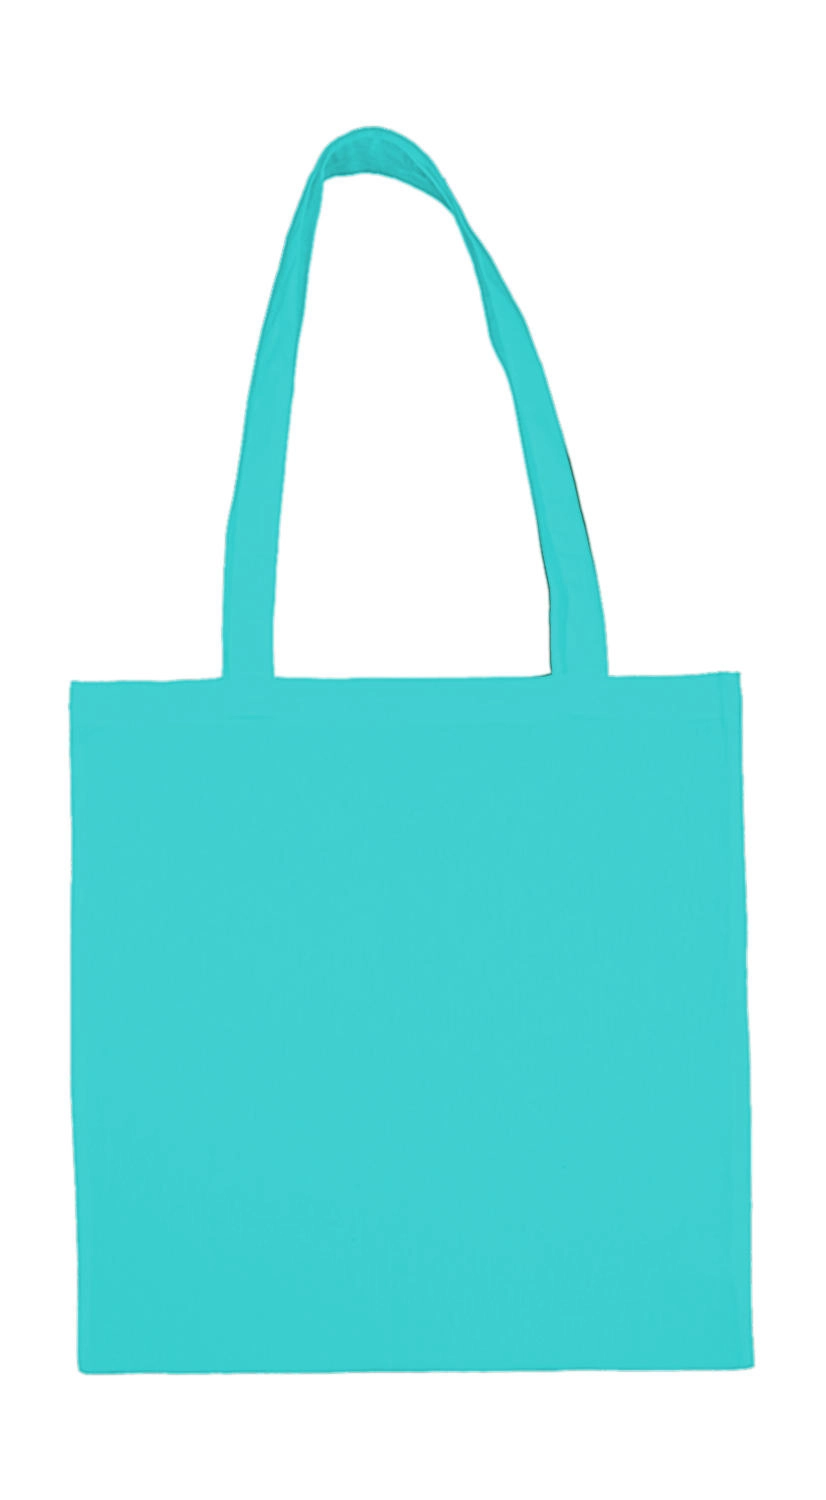 Cotton Bag LH zum Besticken und Bedrucken in der Farbe Limpet Shell mit Ihren Logo, Schriftzug oder Motiv.